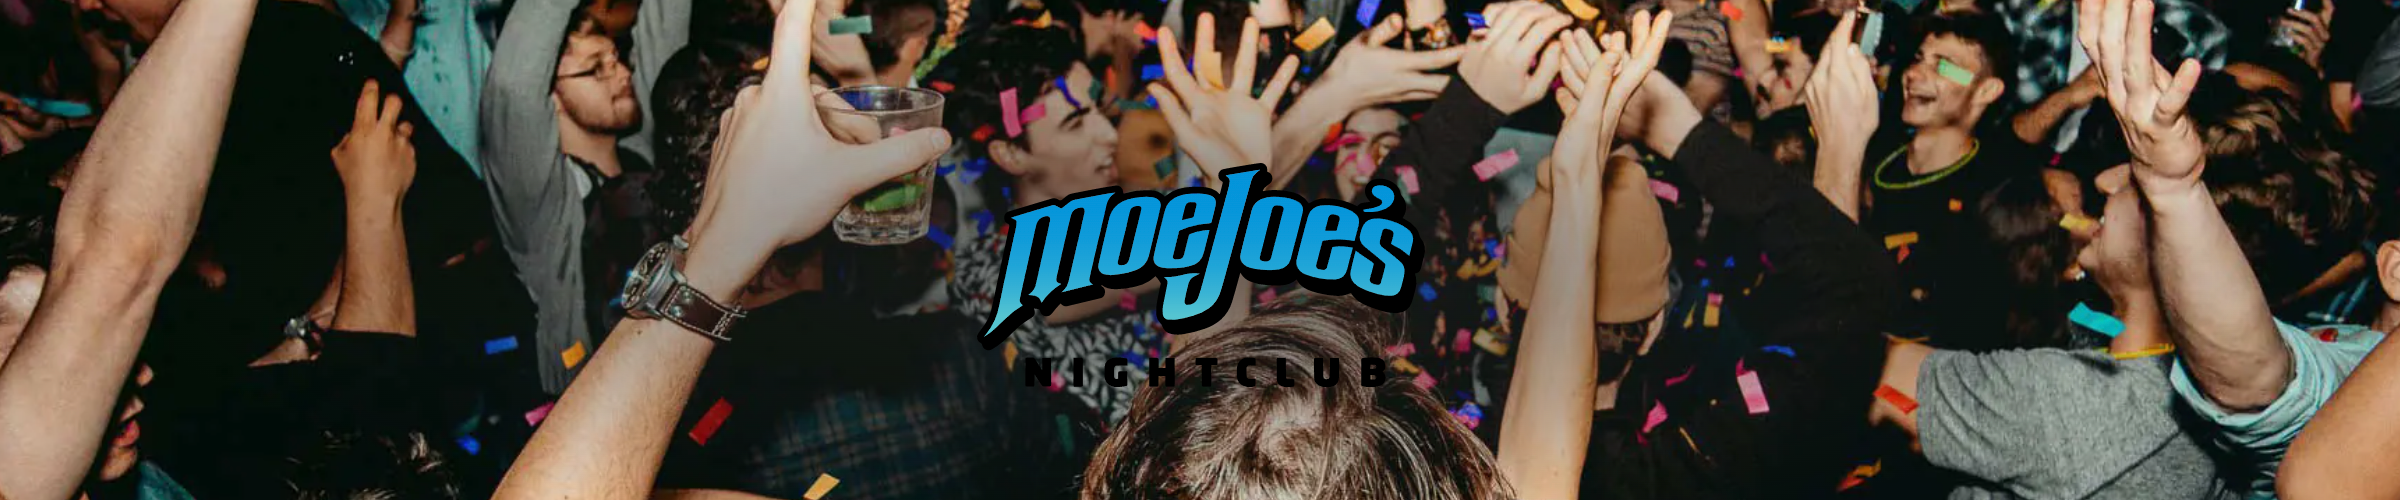 Moe Joe's